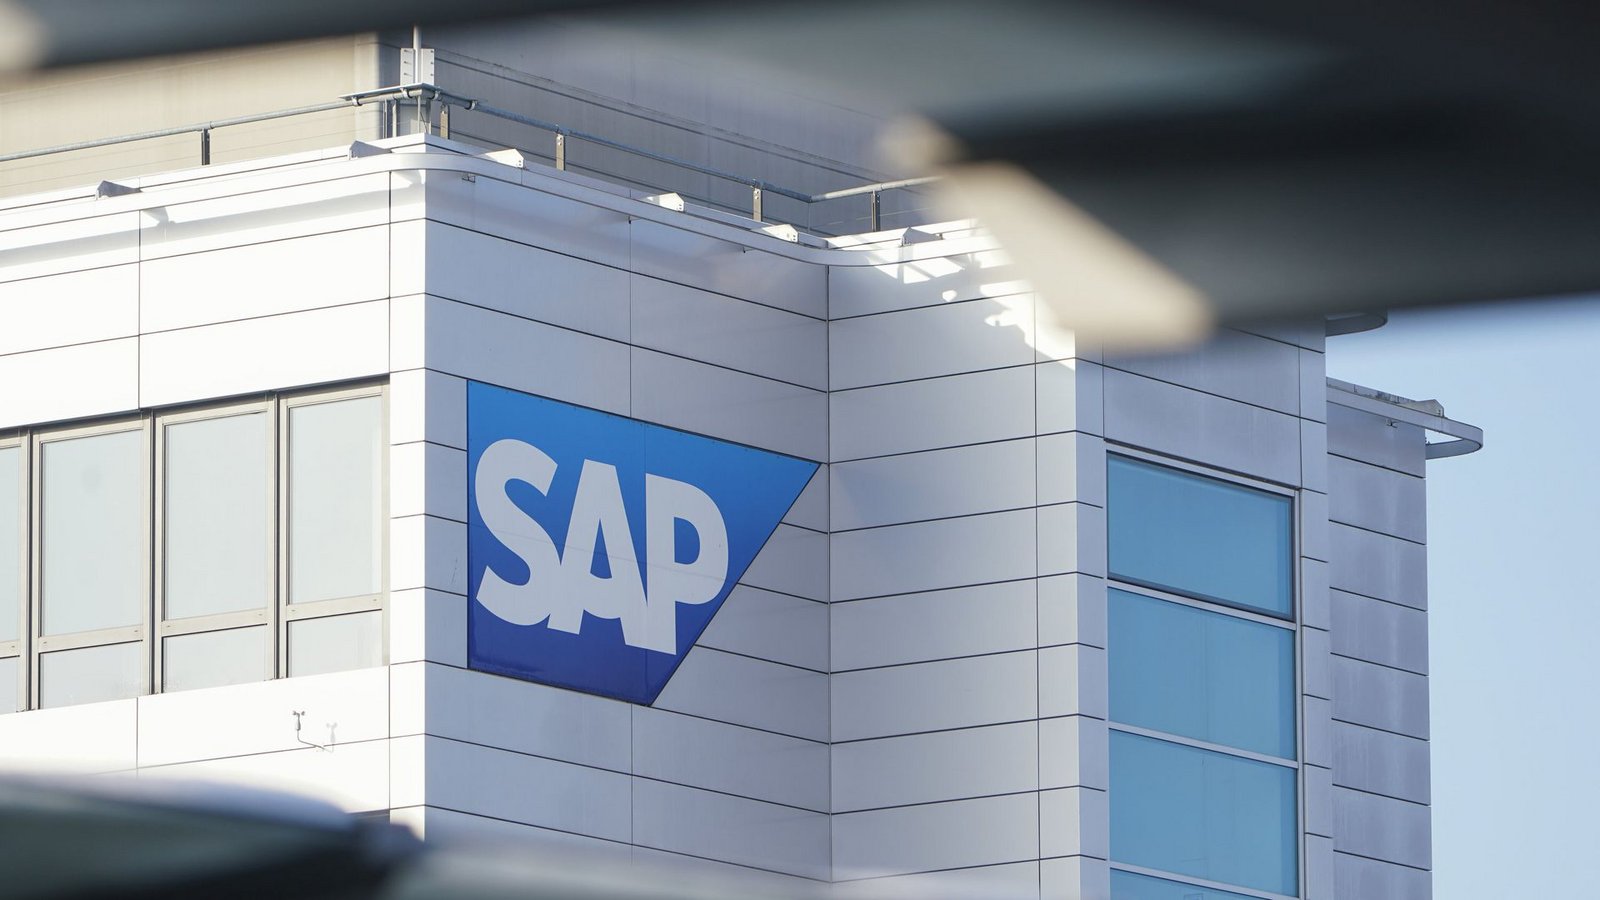 Der Walldorfer Software-Konzern SAP plant einen Stellenabbau. (Symbolbild)Foto: dpa/Uwe Anspach